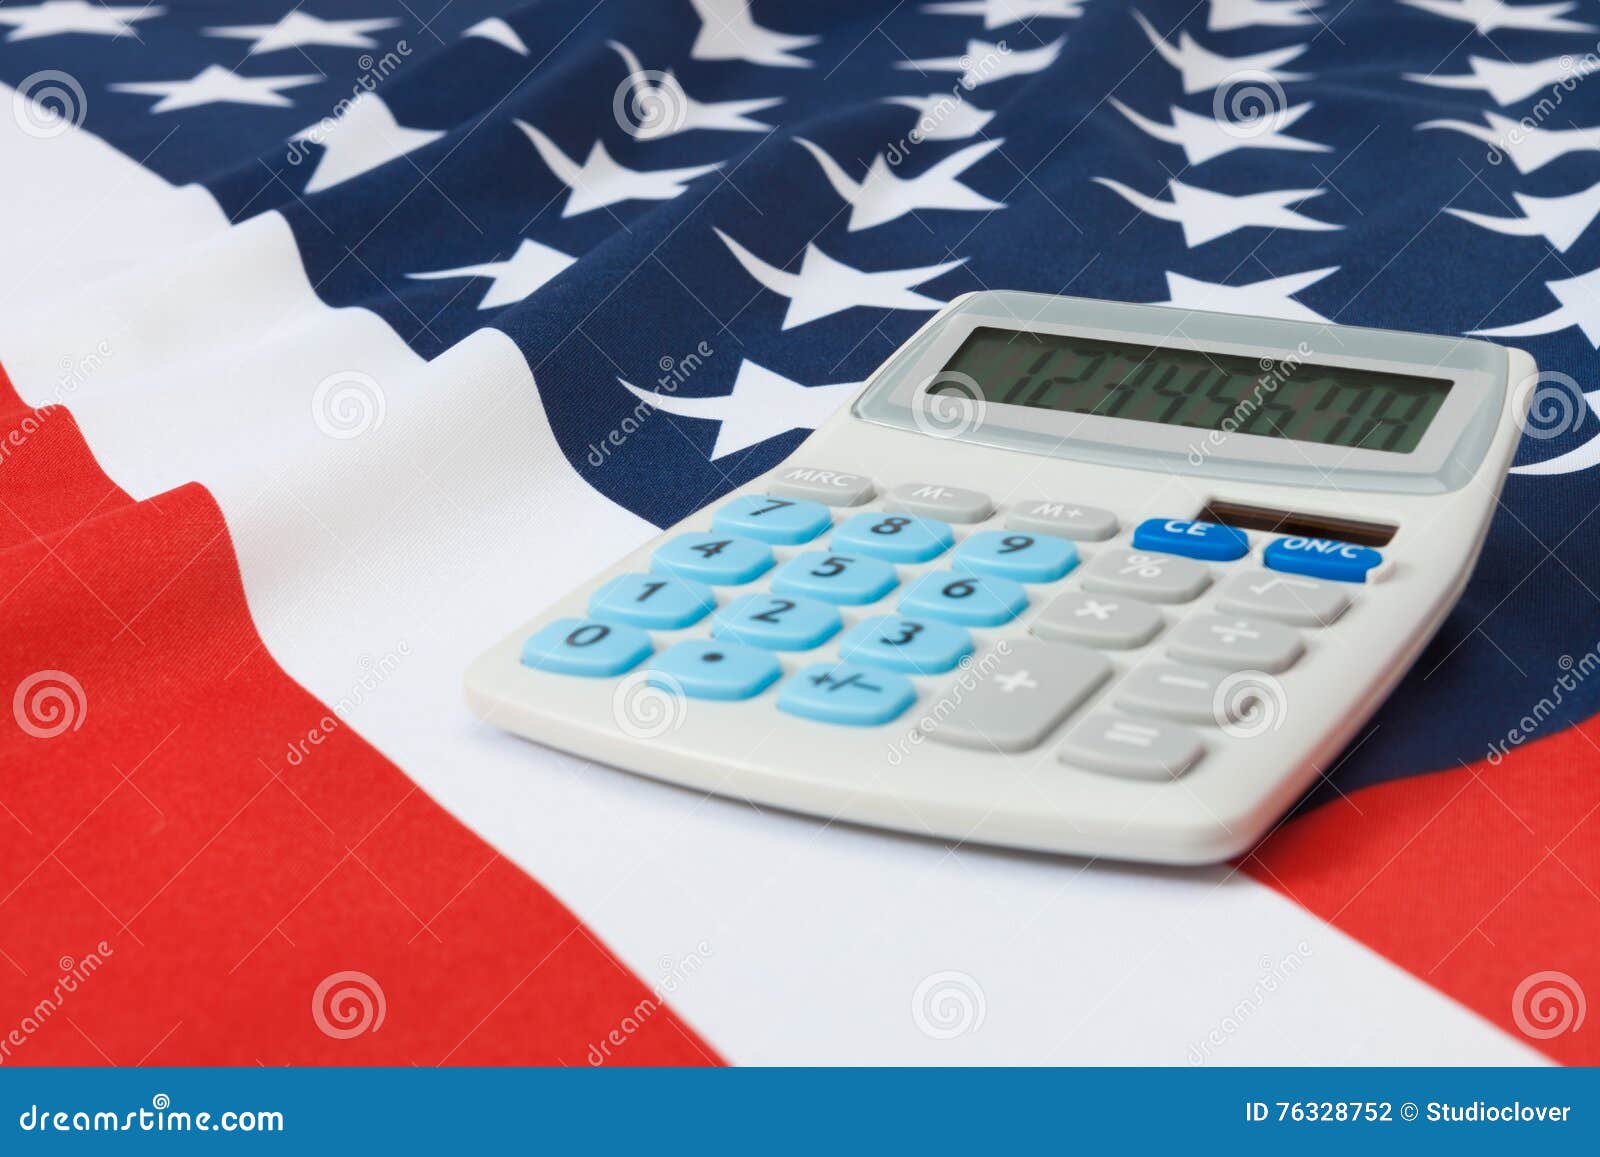 O estúdio disparou da bandeira nacional enrugado com a calculadora sobre ele - no Estados Unidos da América. Parte da bandeira nacional enrugado do tiro do estúdio com a calculadora sobre ela série - Estados Unidos da América